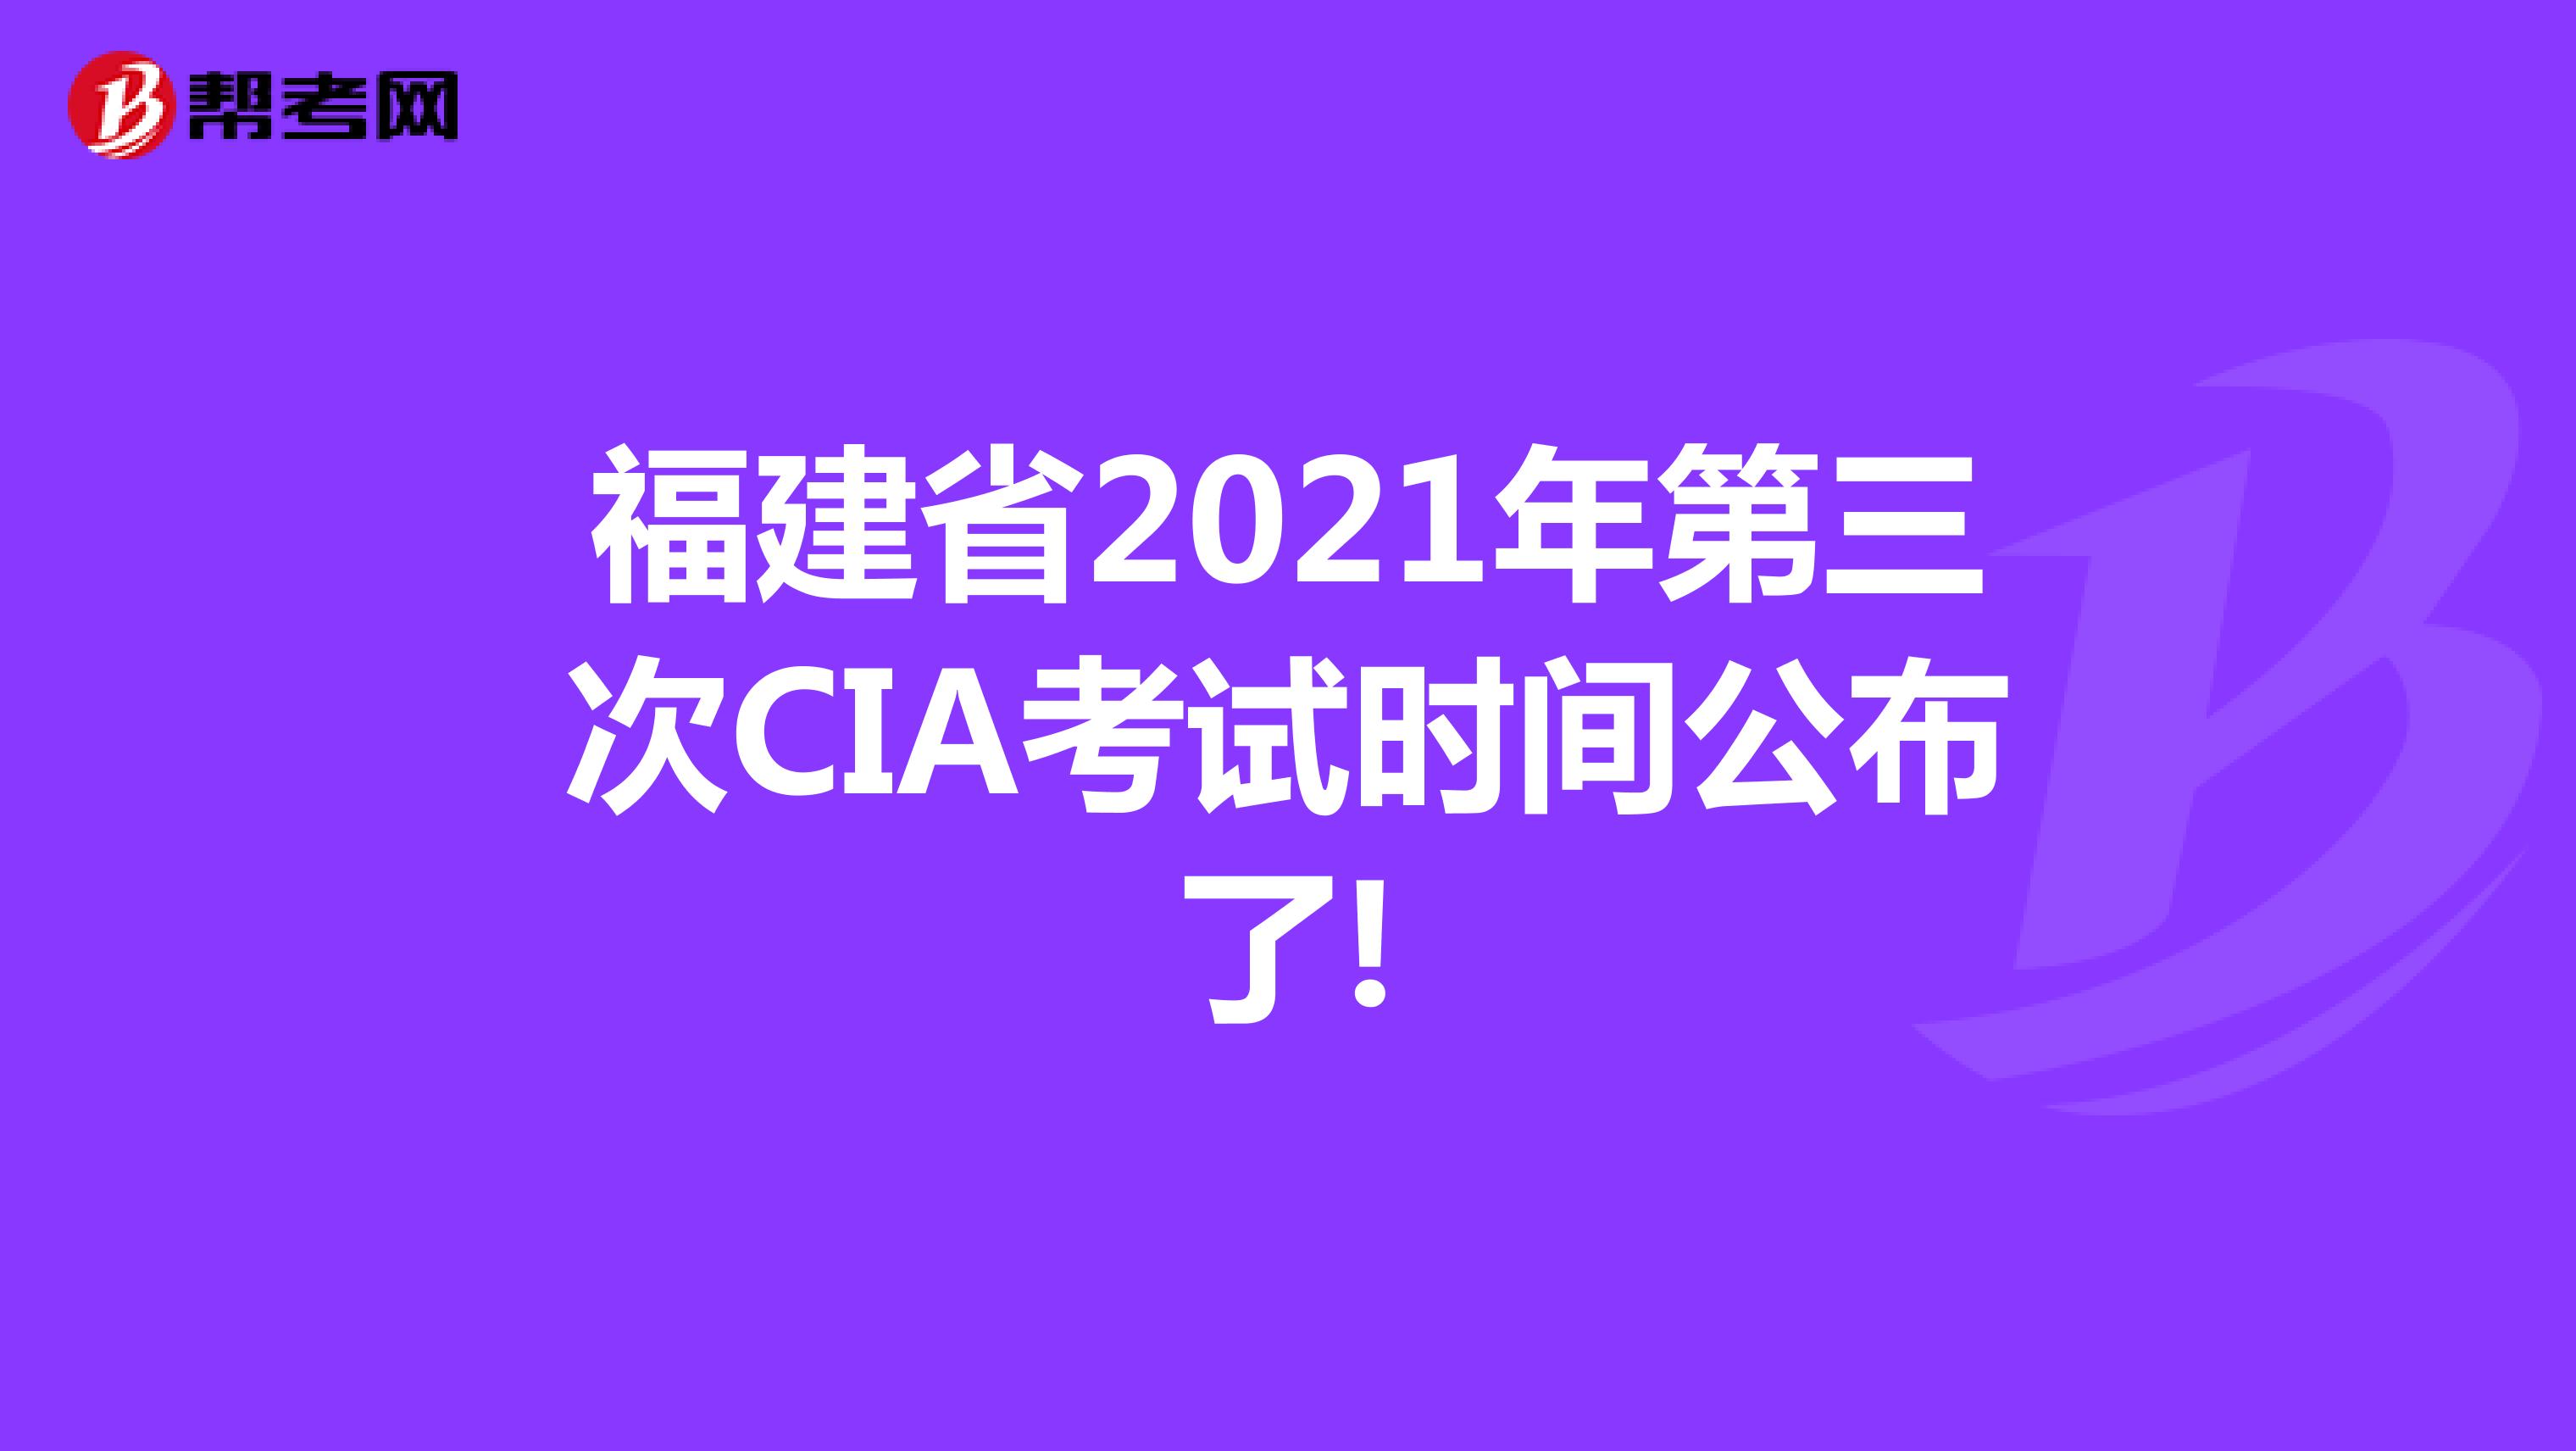 福建省2021年第三次CIA考试时间公布了!